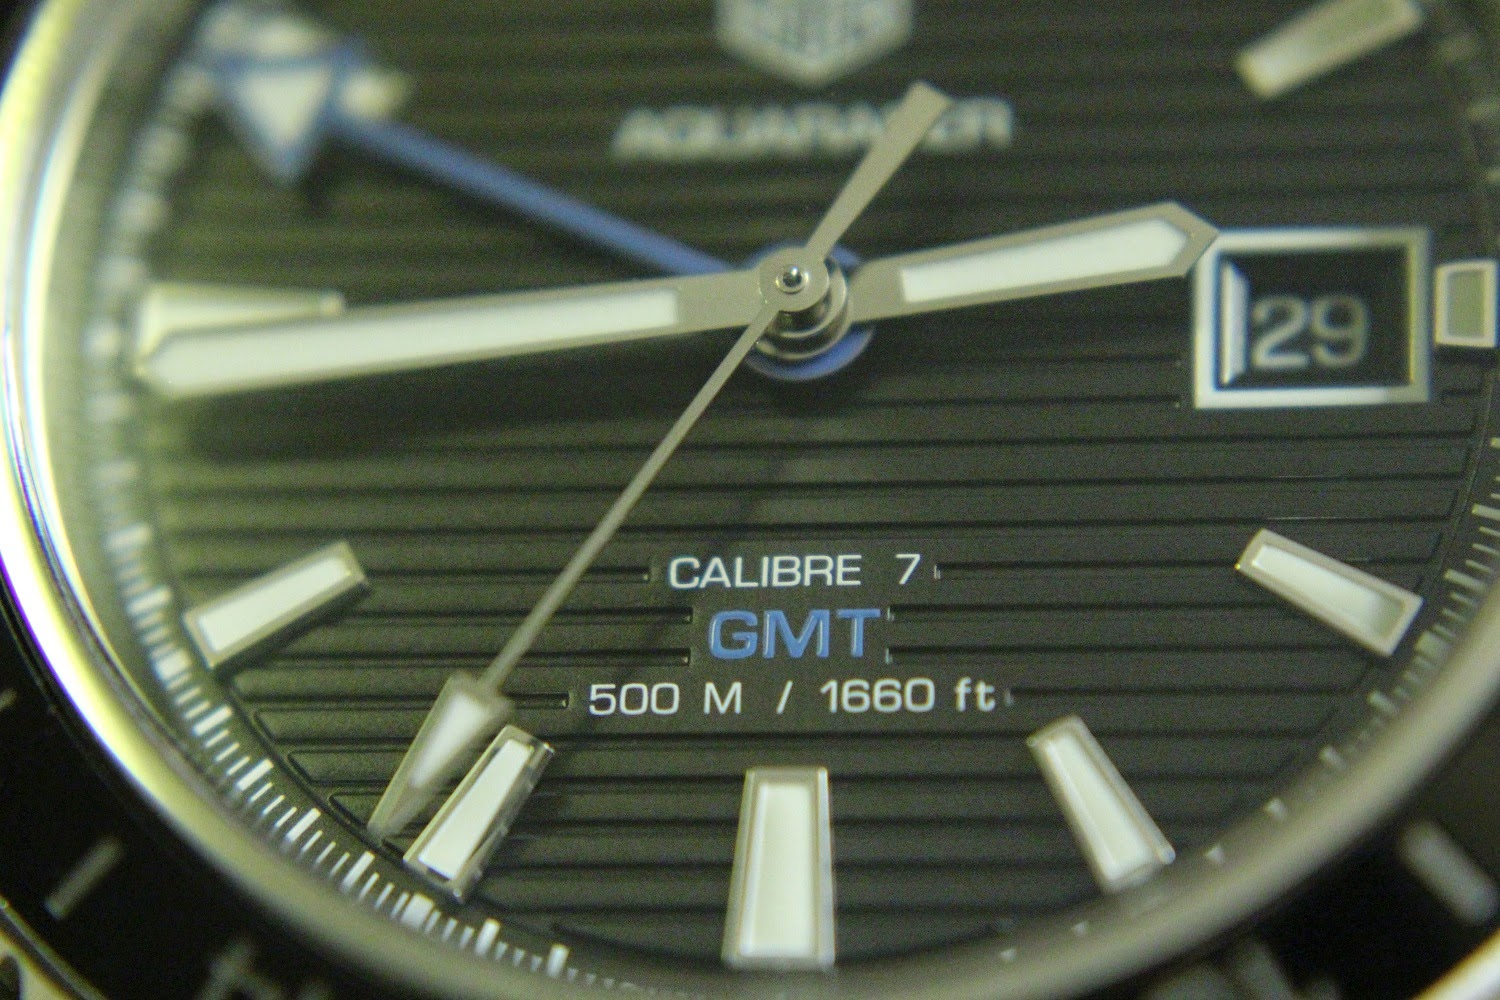 Gtm 7. Tag Heuer Calibre 7 GMT. GTM 07. Калибр 2650 океан. Часы IMC Original Automatic Calibre.